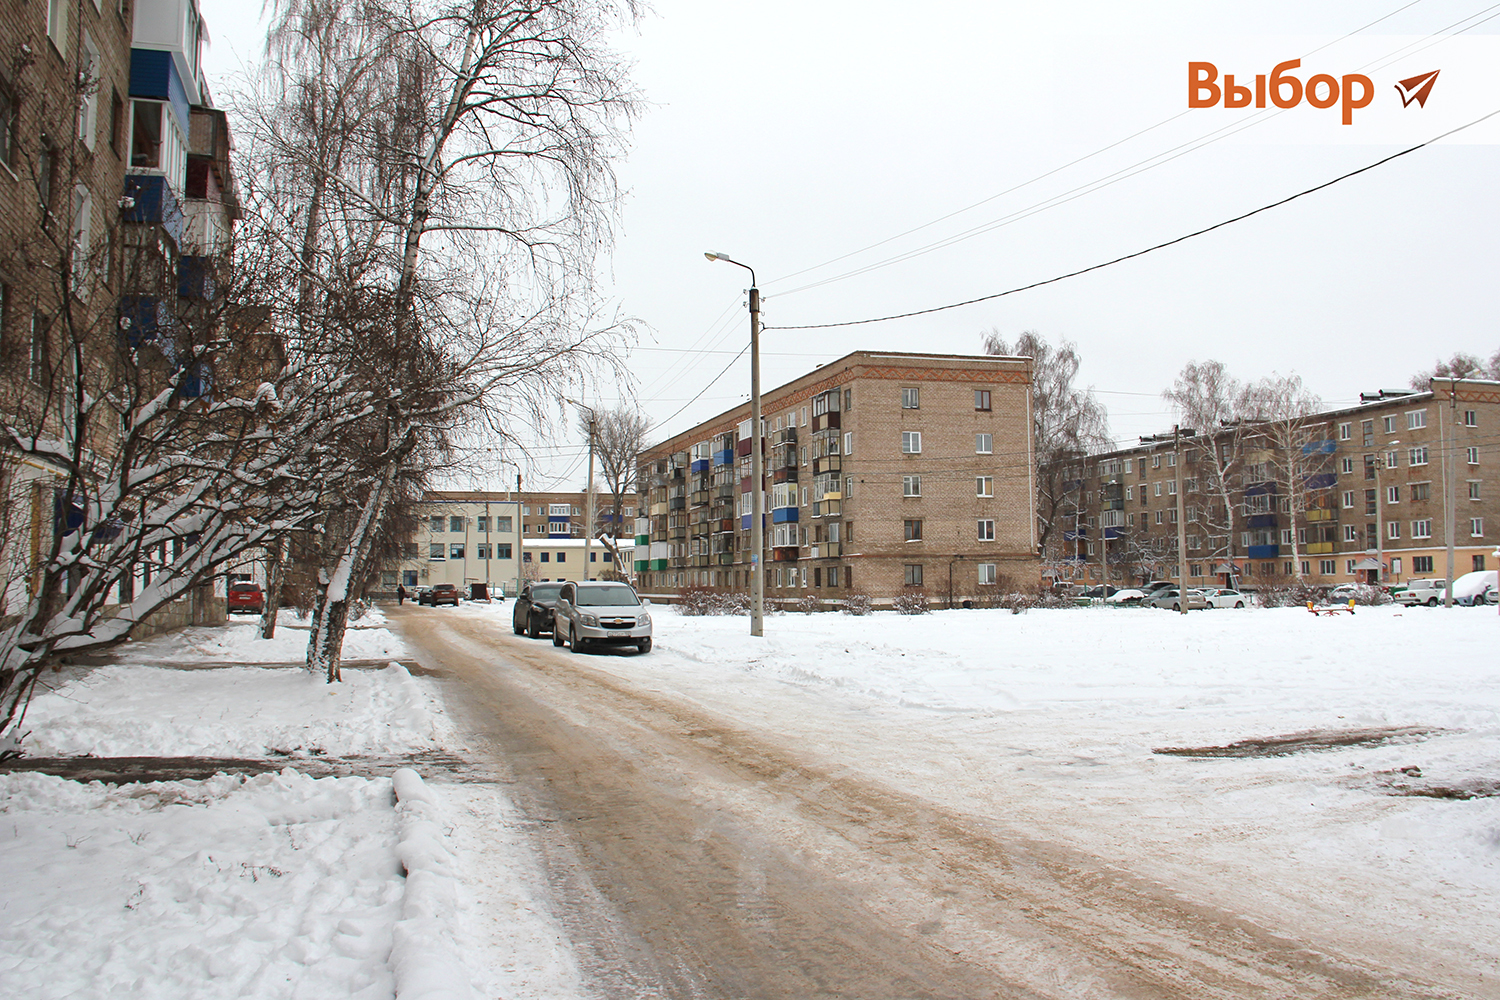 Топ-3: какие территории города Салавата будут благоустроены в 2022 году по программе "Башкирские дворики"